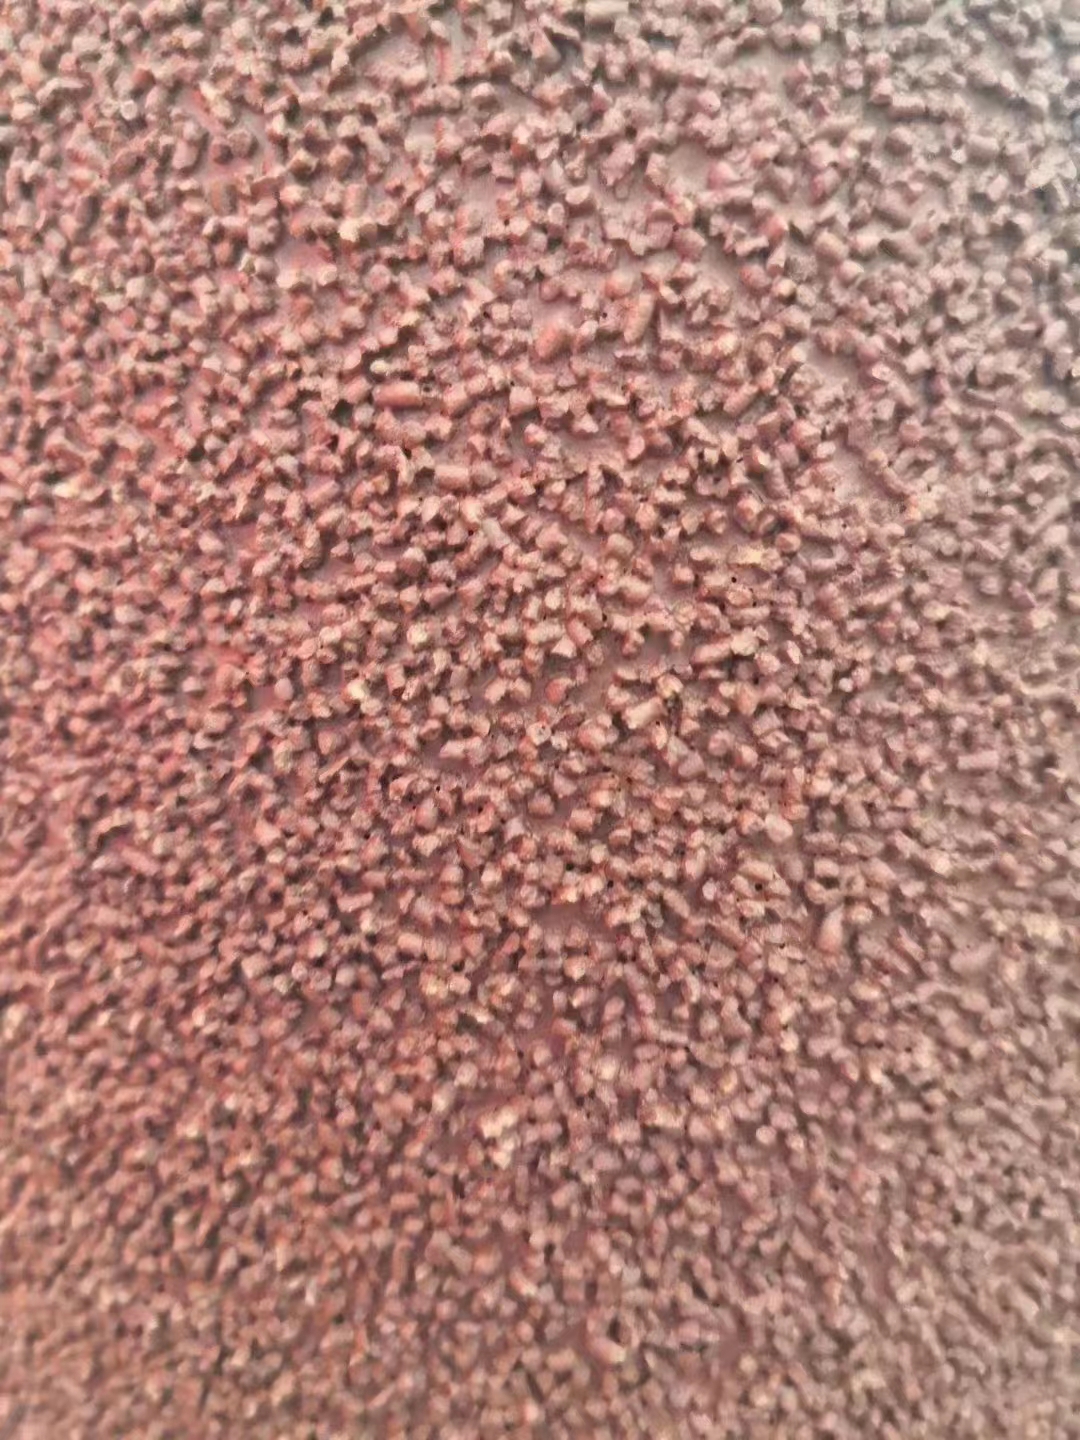 堆積磨料砂帶與普通砂帶的區別